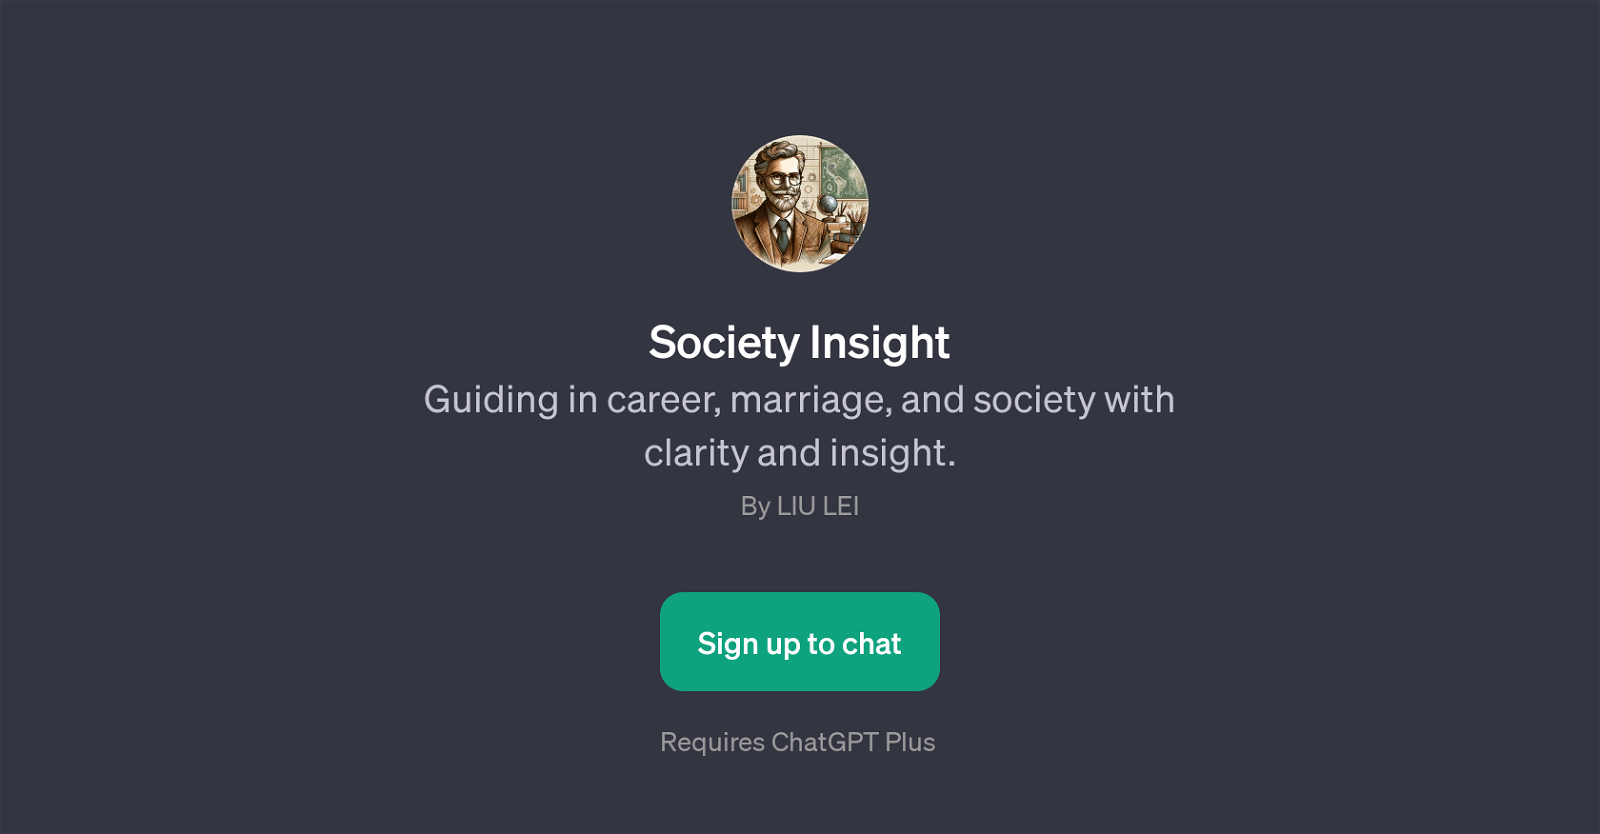 Society Insight website